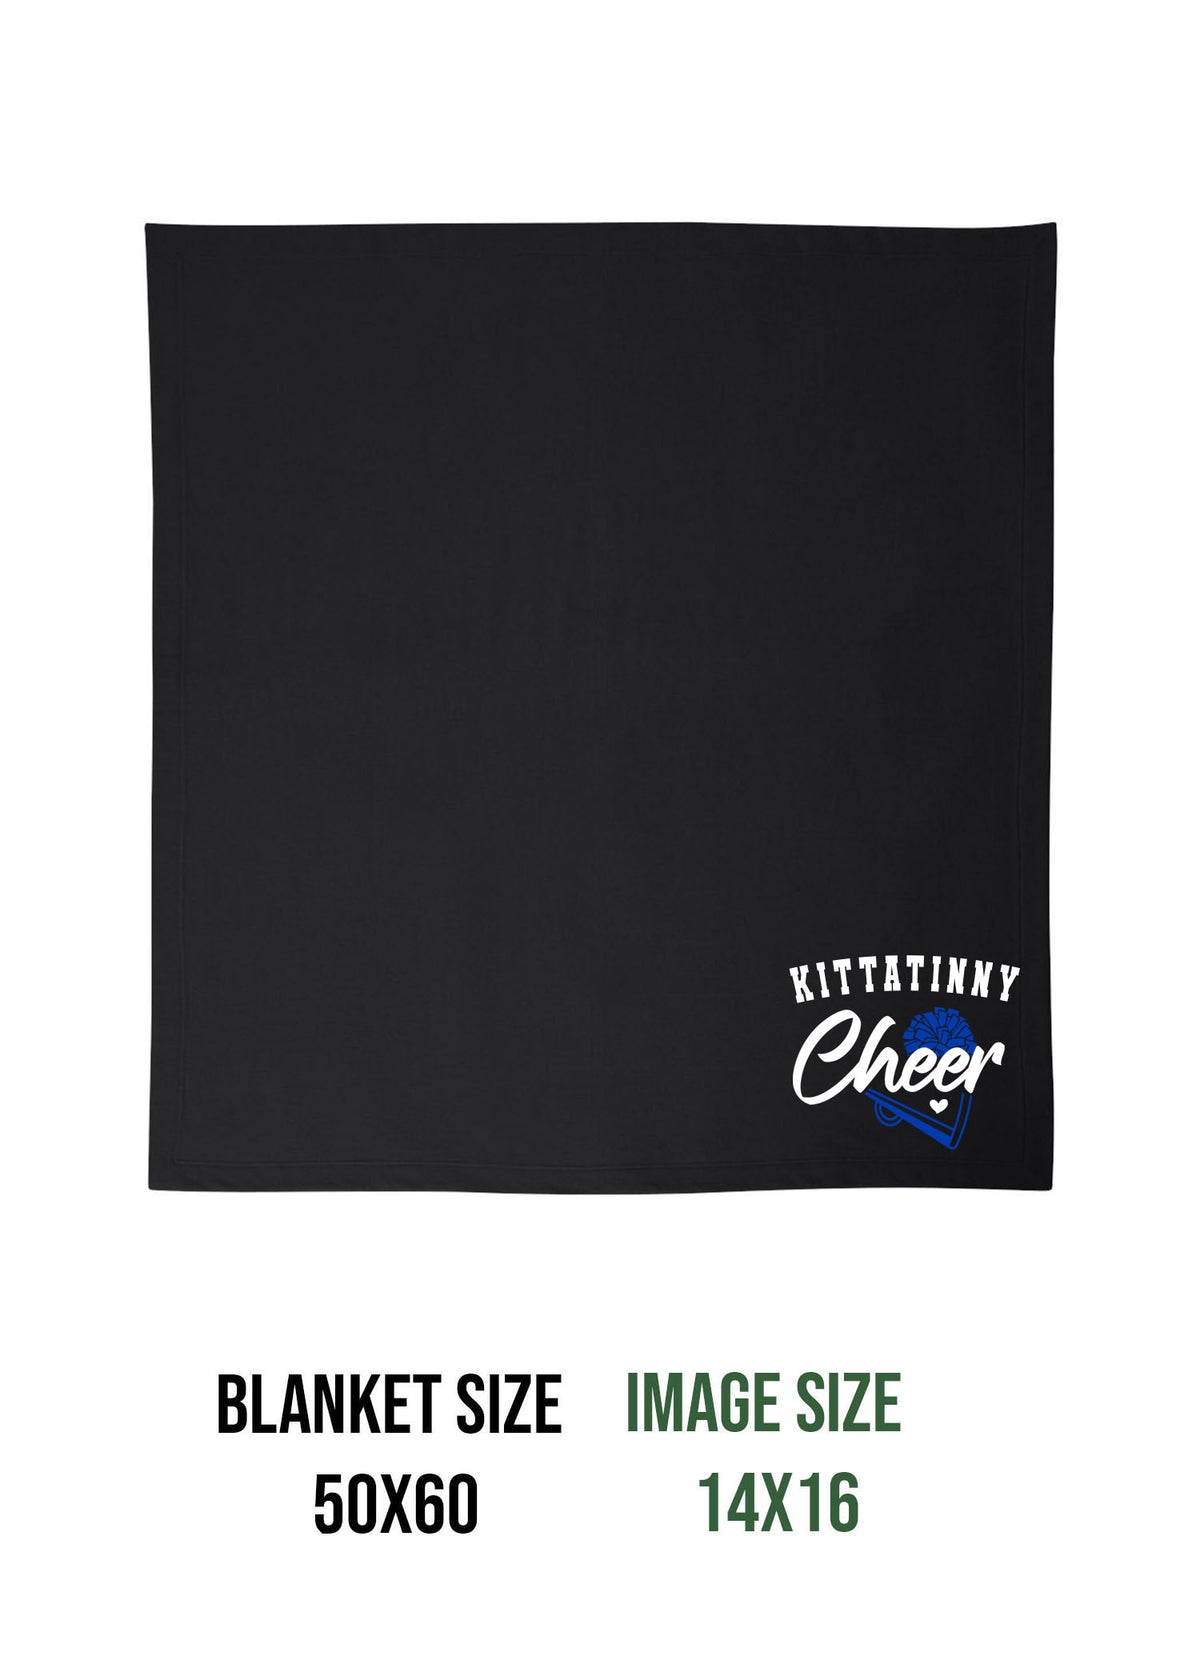 Kittatinny Cheer Design 9 Blanket